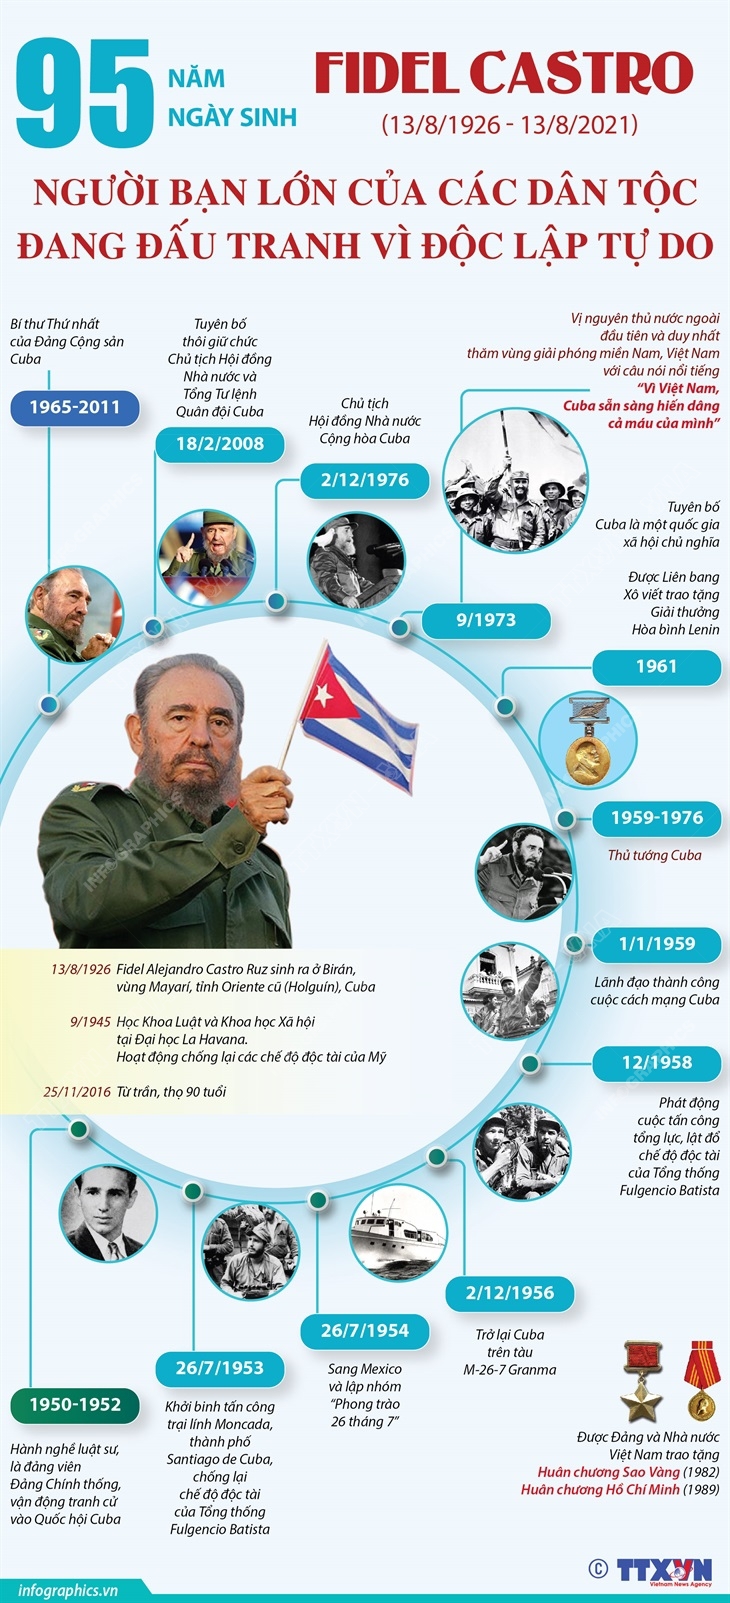 [Infographic] 95 năm ngày sinh Fidel Castro (13/8/1926 - 13/8/2021): Người bạn lớn của các dân tộc đang đấu tranh vì độc lập tự do - Ảnh 1